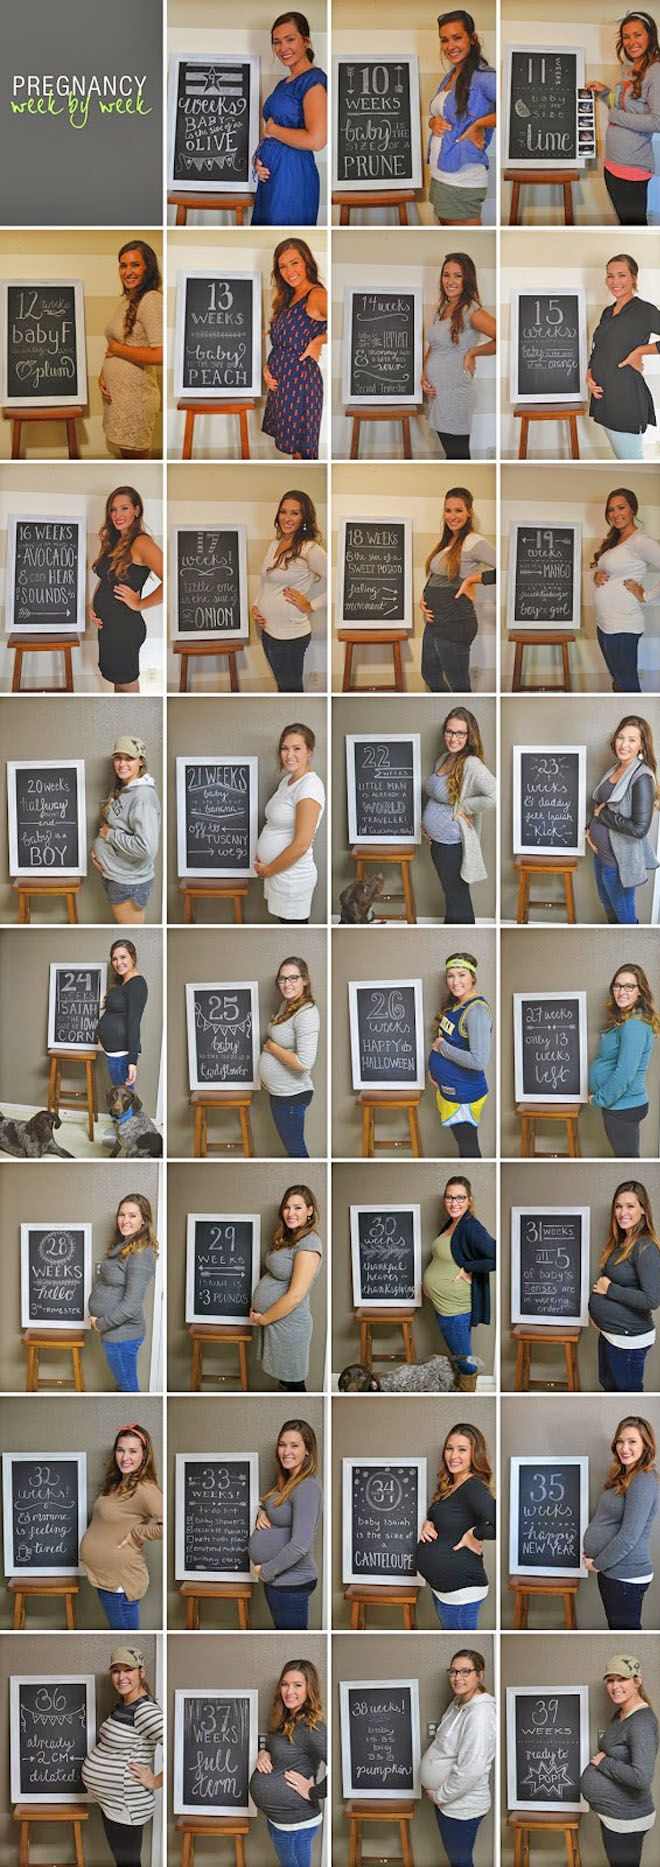 14 pregnancy week by week photo ideas: with chalkboard